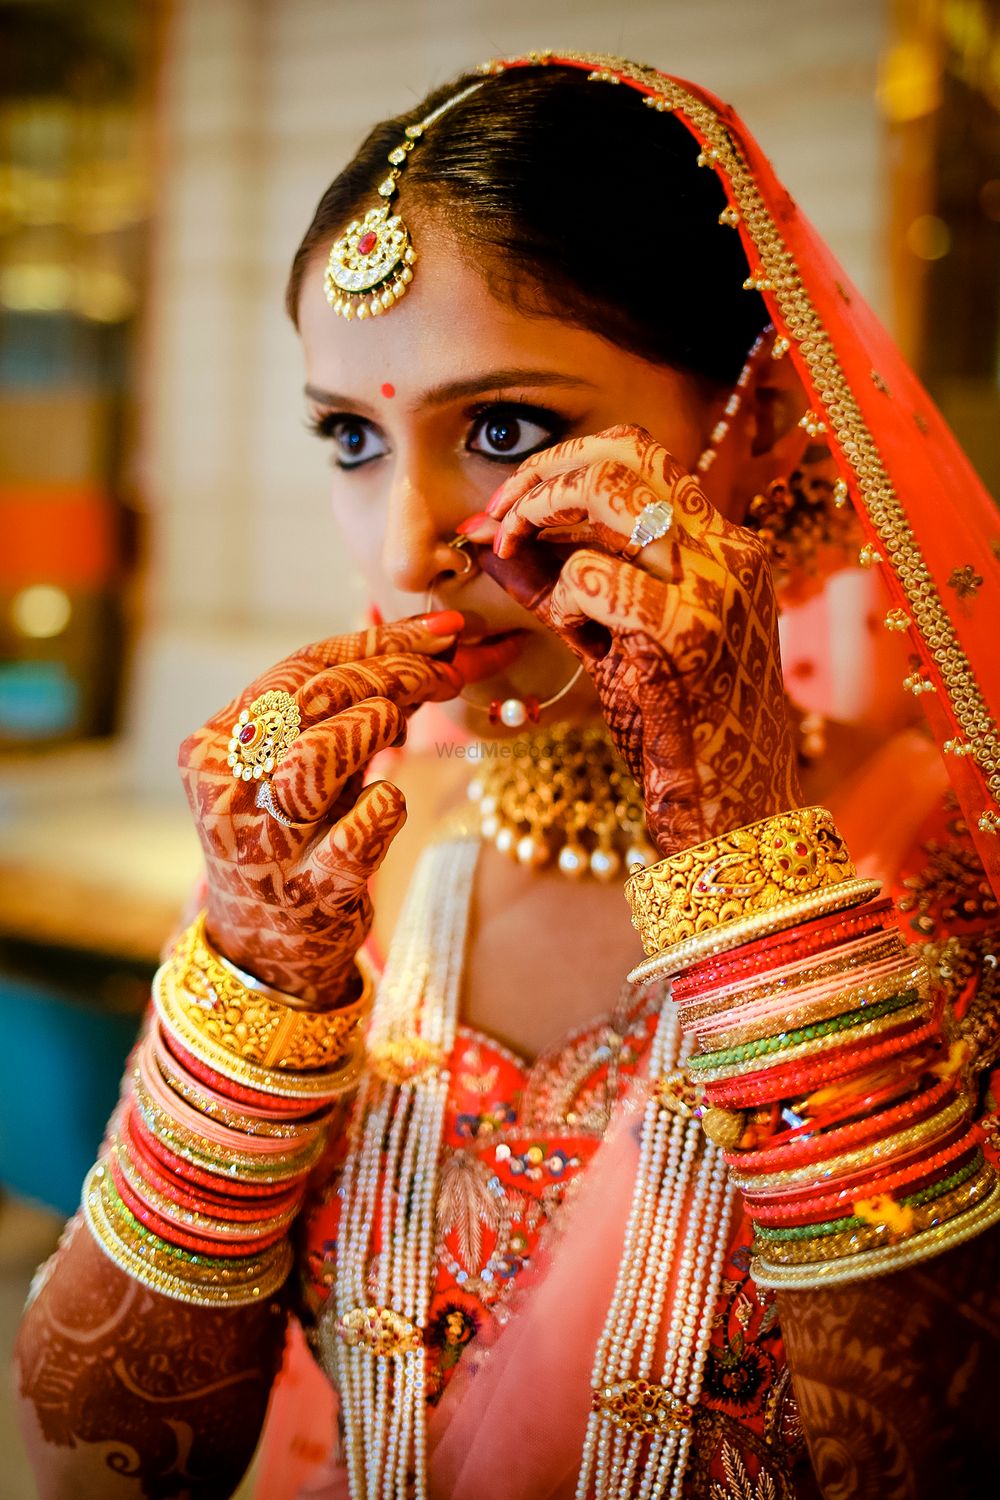 Photo From A Gala Wedding Story at Kolkata | Priya & Utkarsh | - By Monojit Bhattacharya